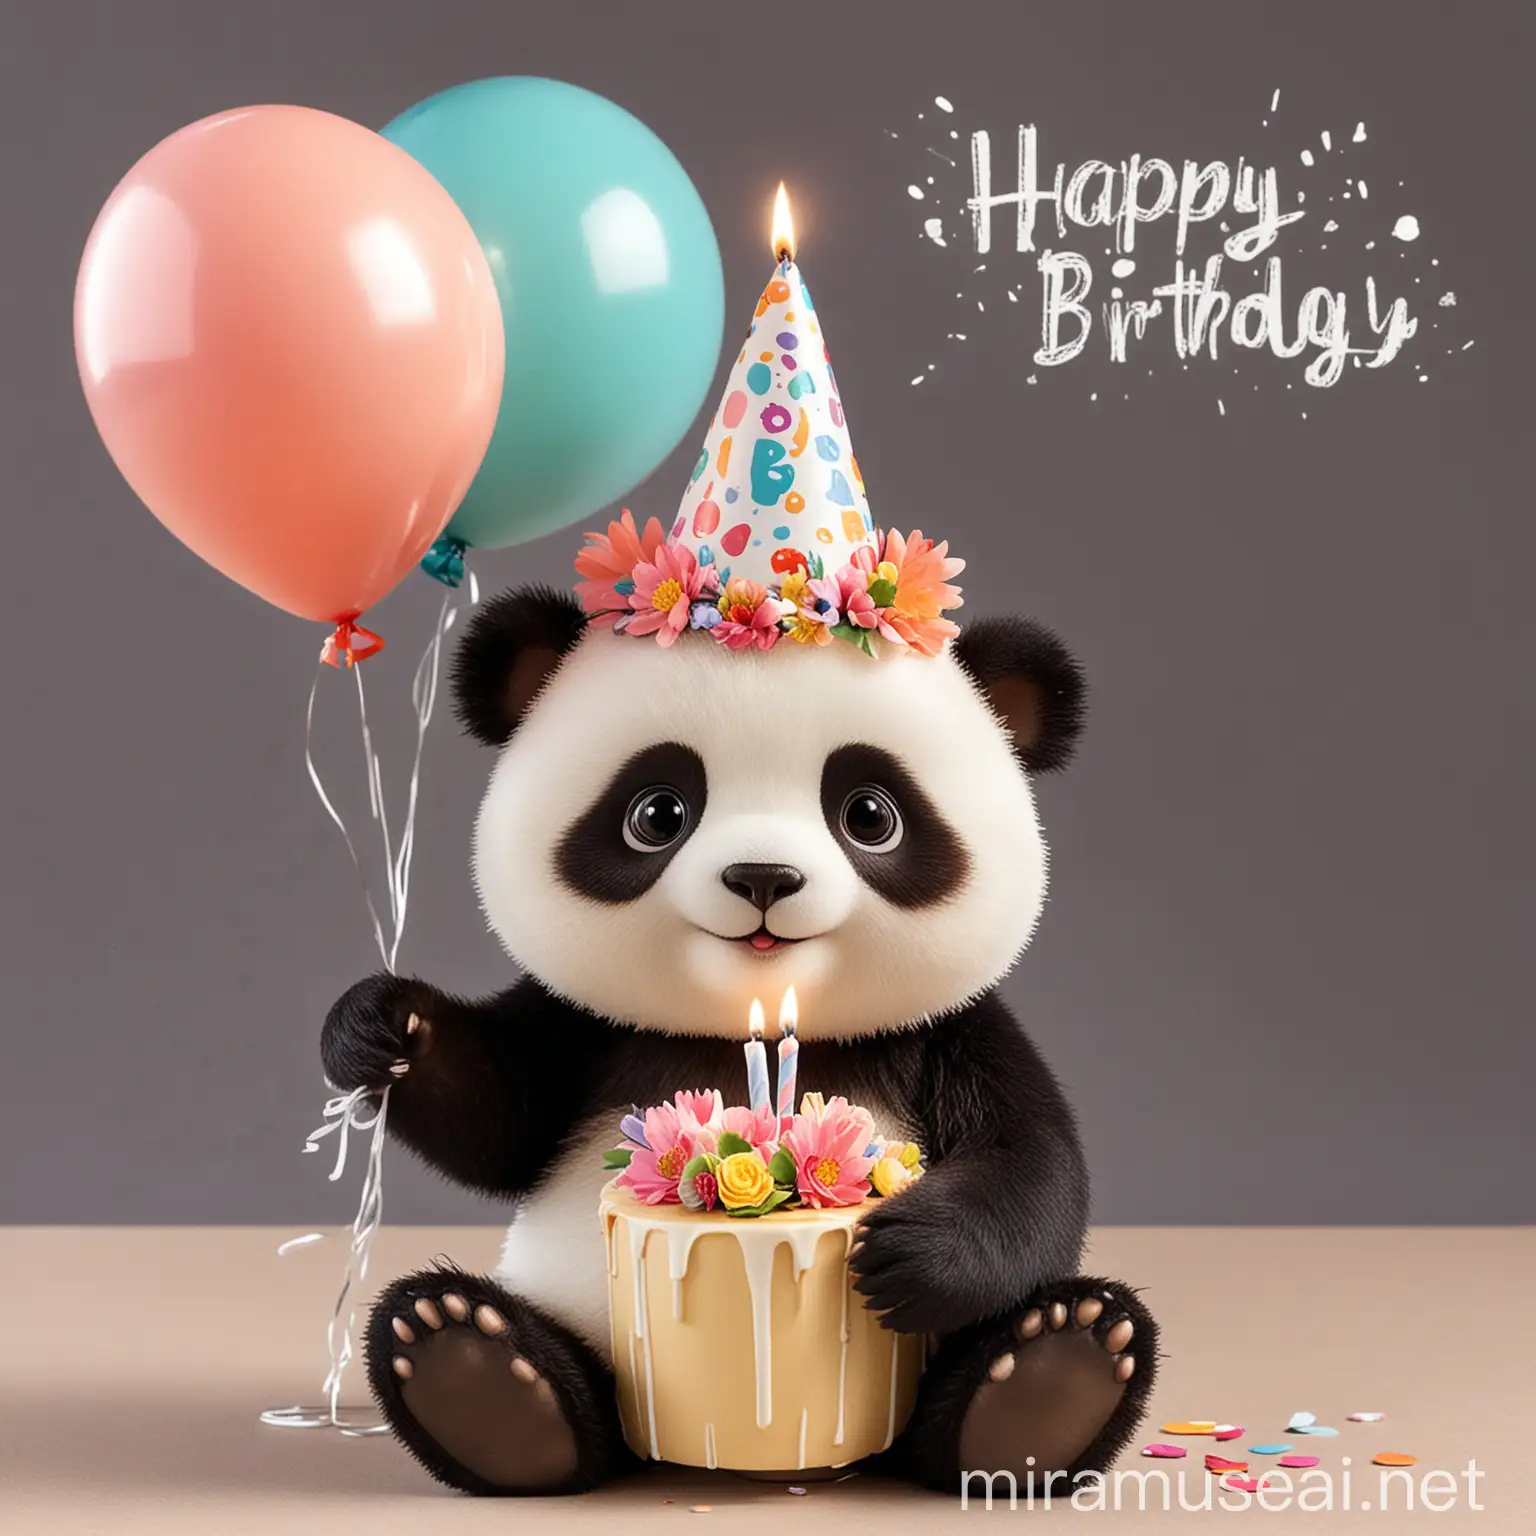  Открытка с днем рождения с пандой Изображение:  Милая панда в праздничном колпаке, держащая в лапах торт со свечой. Панда обнимает букет цветов. Панда играет с воздушными шарами. Панда сидит на подарке с бантом. Текст:  На лицевой стороне:  С днем рождения!